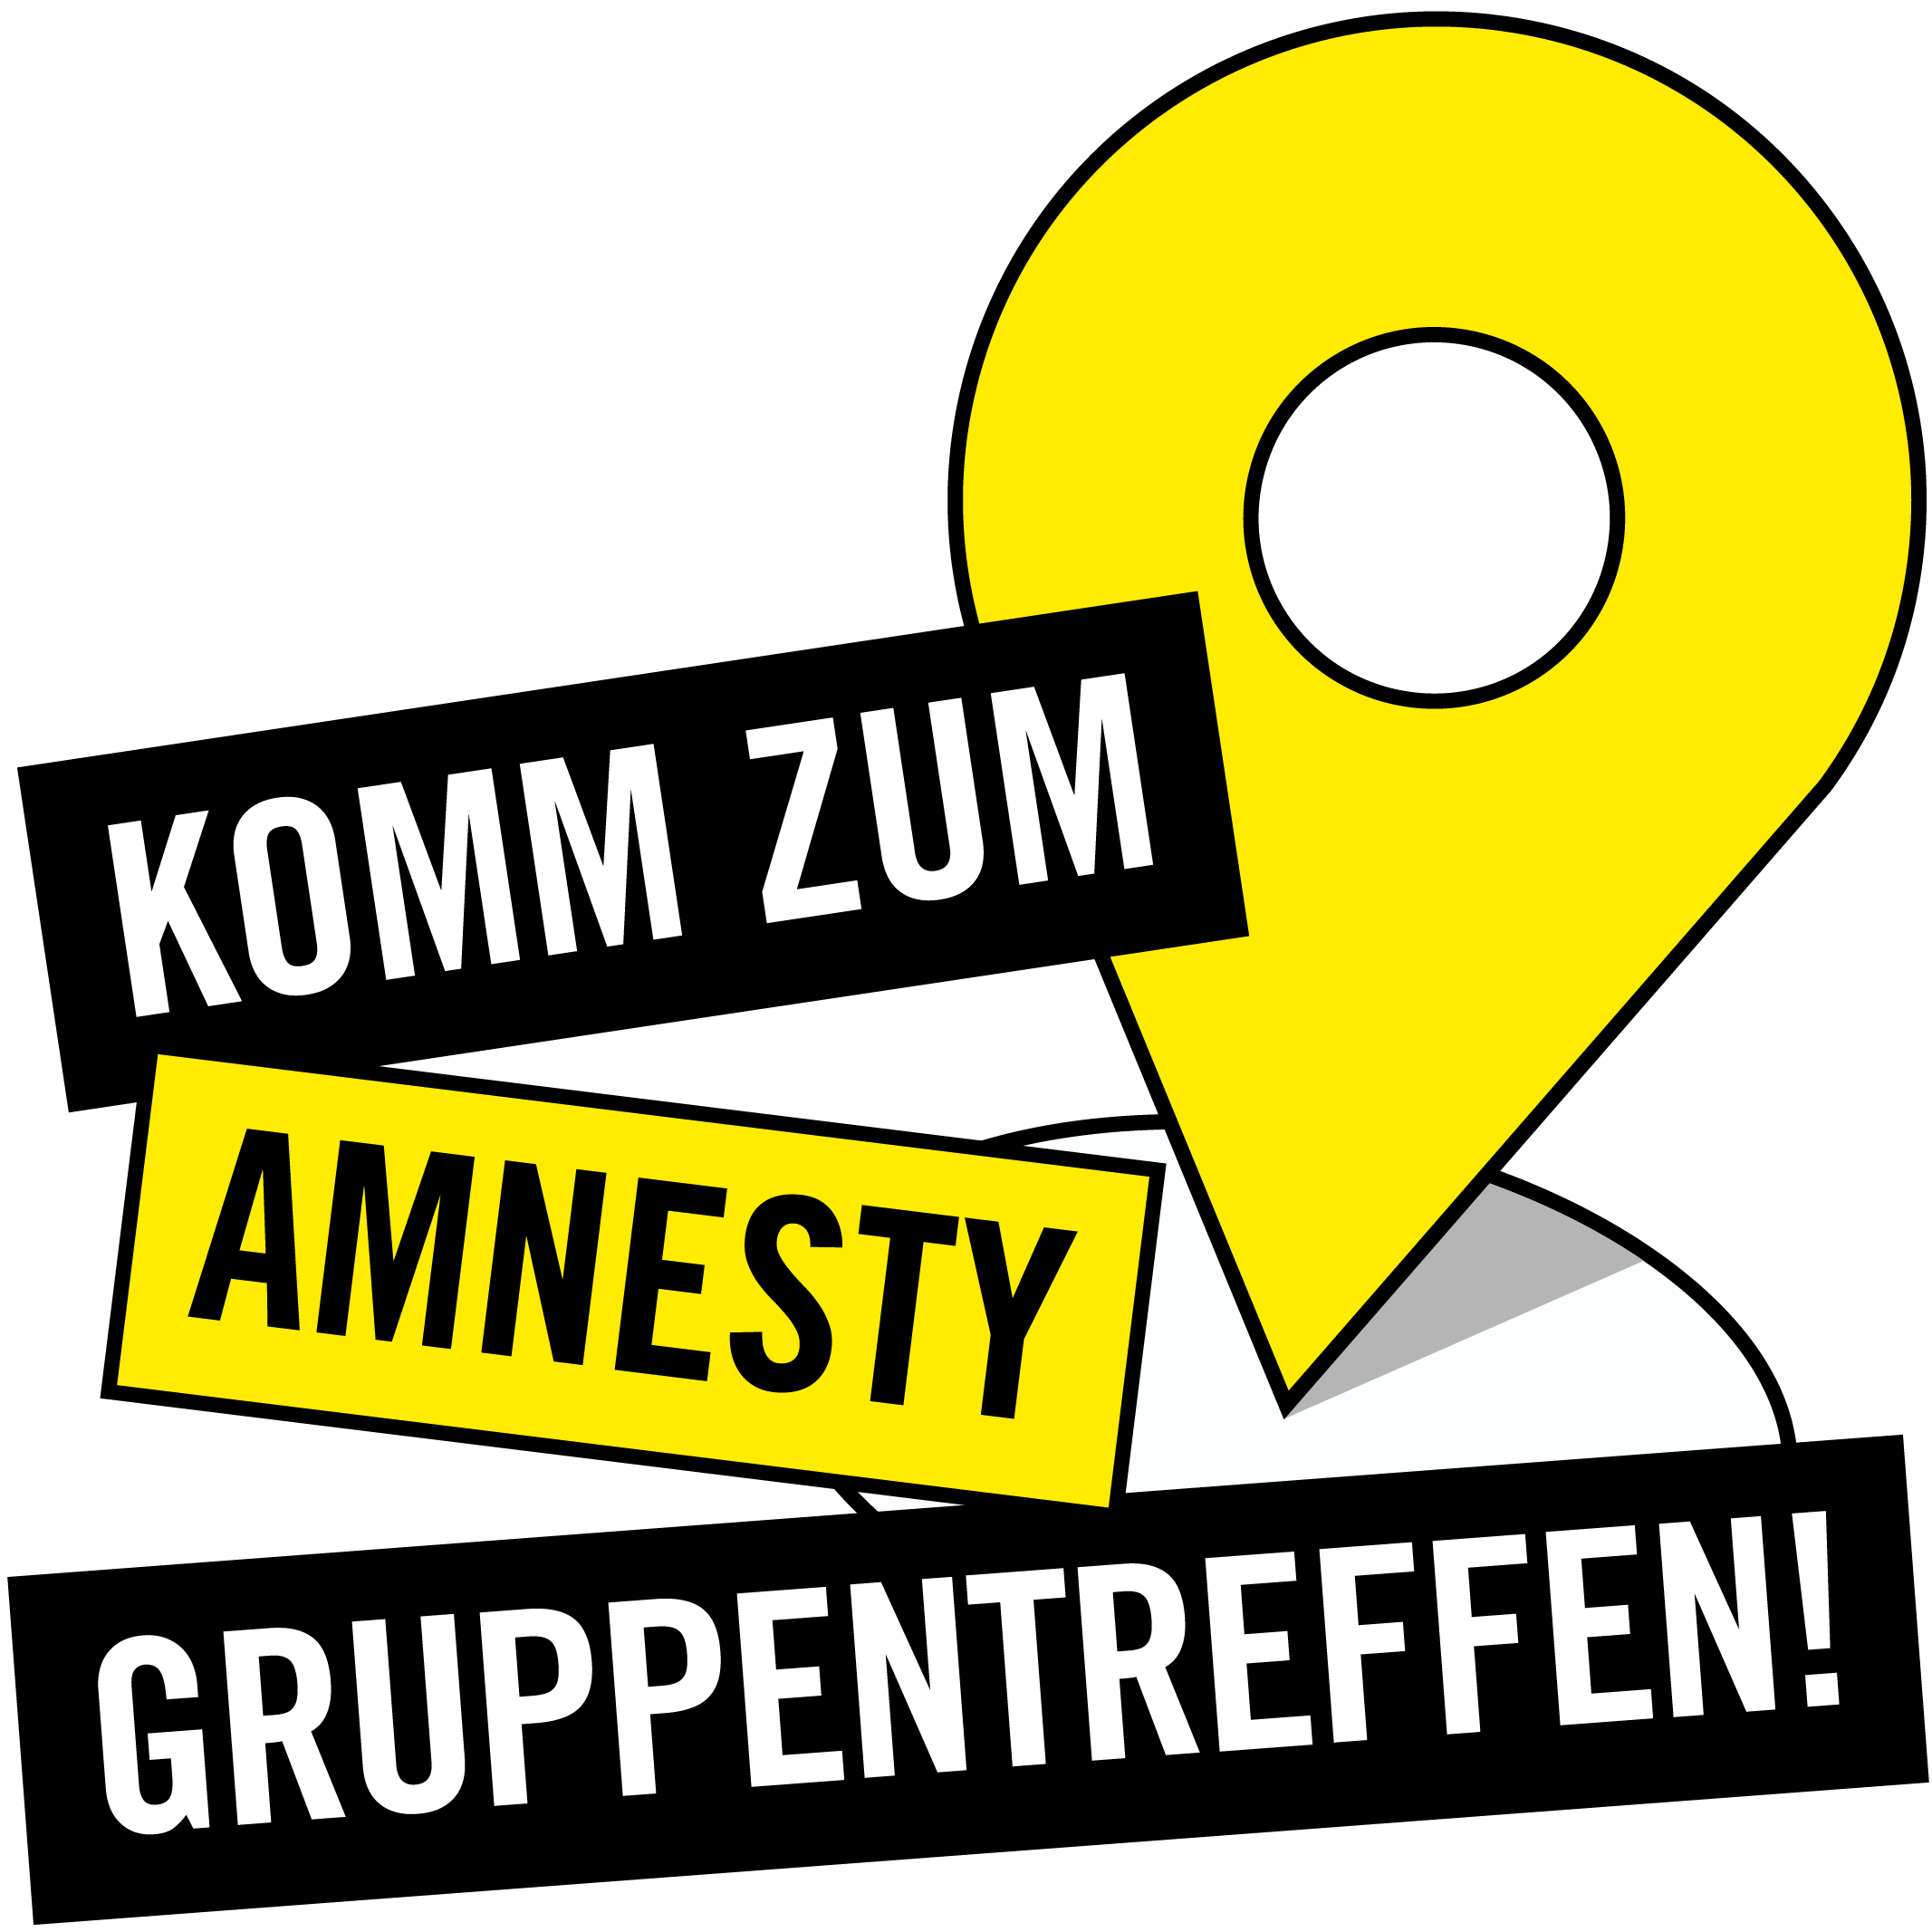 Komm zum  Amnesty Gruppentreffen